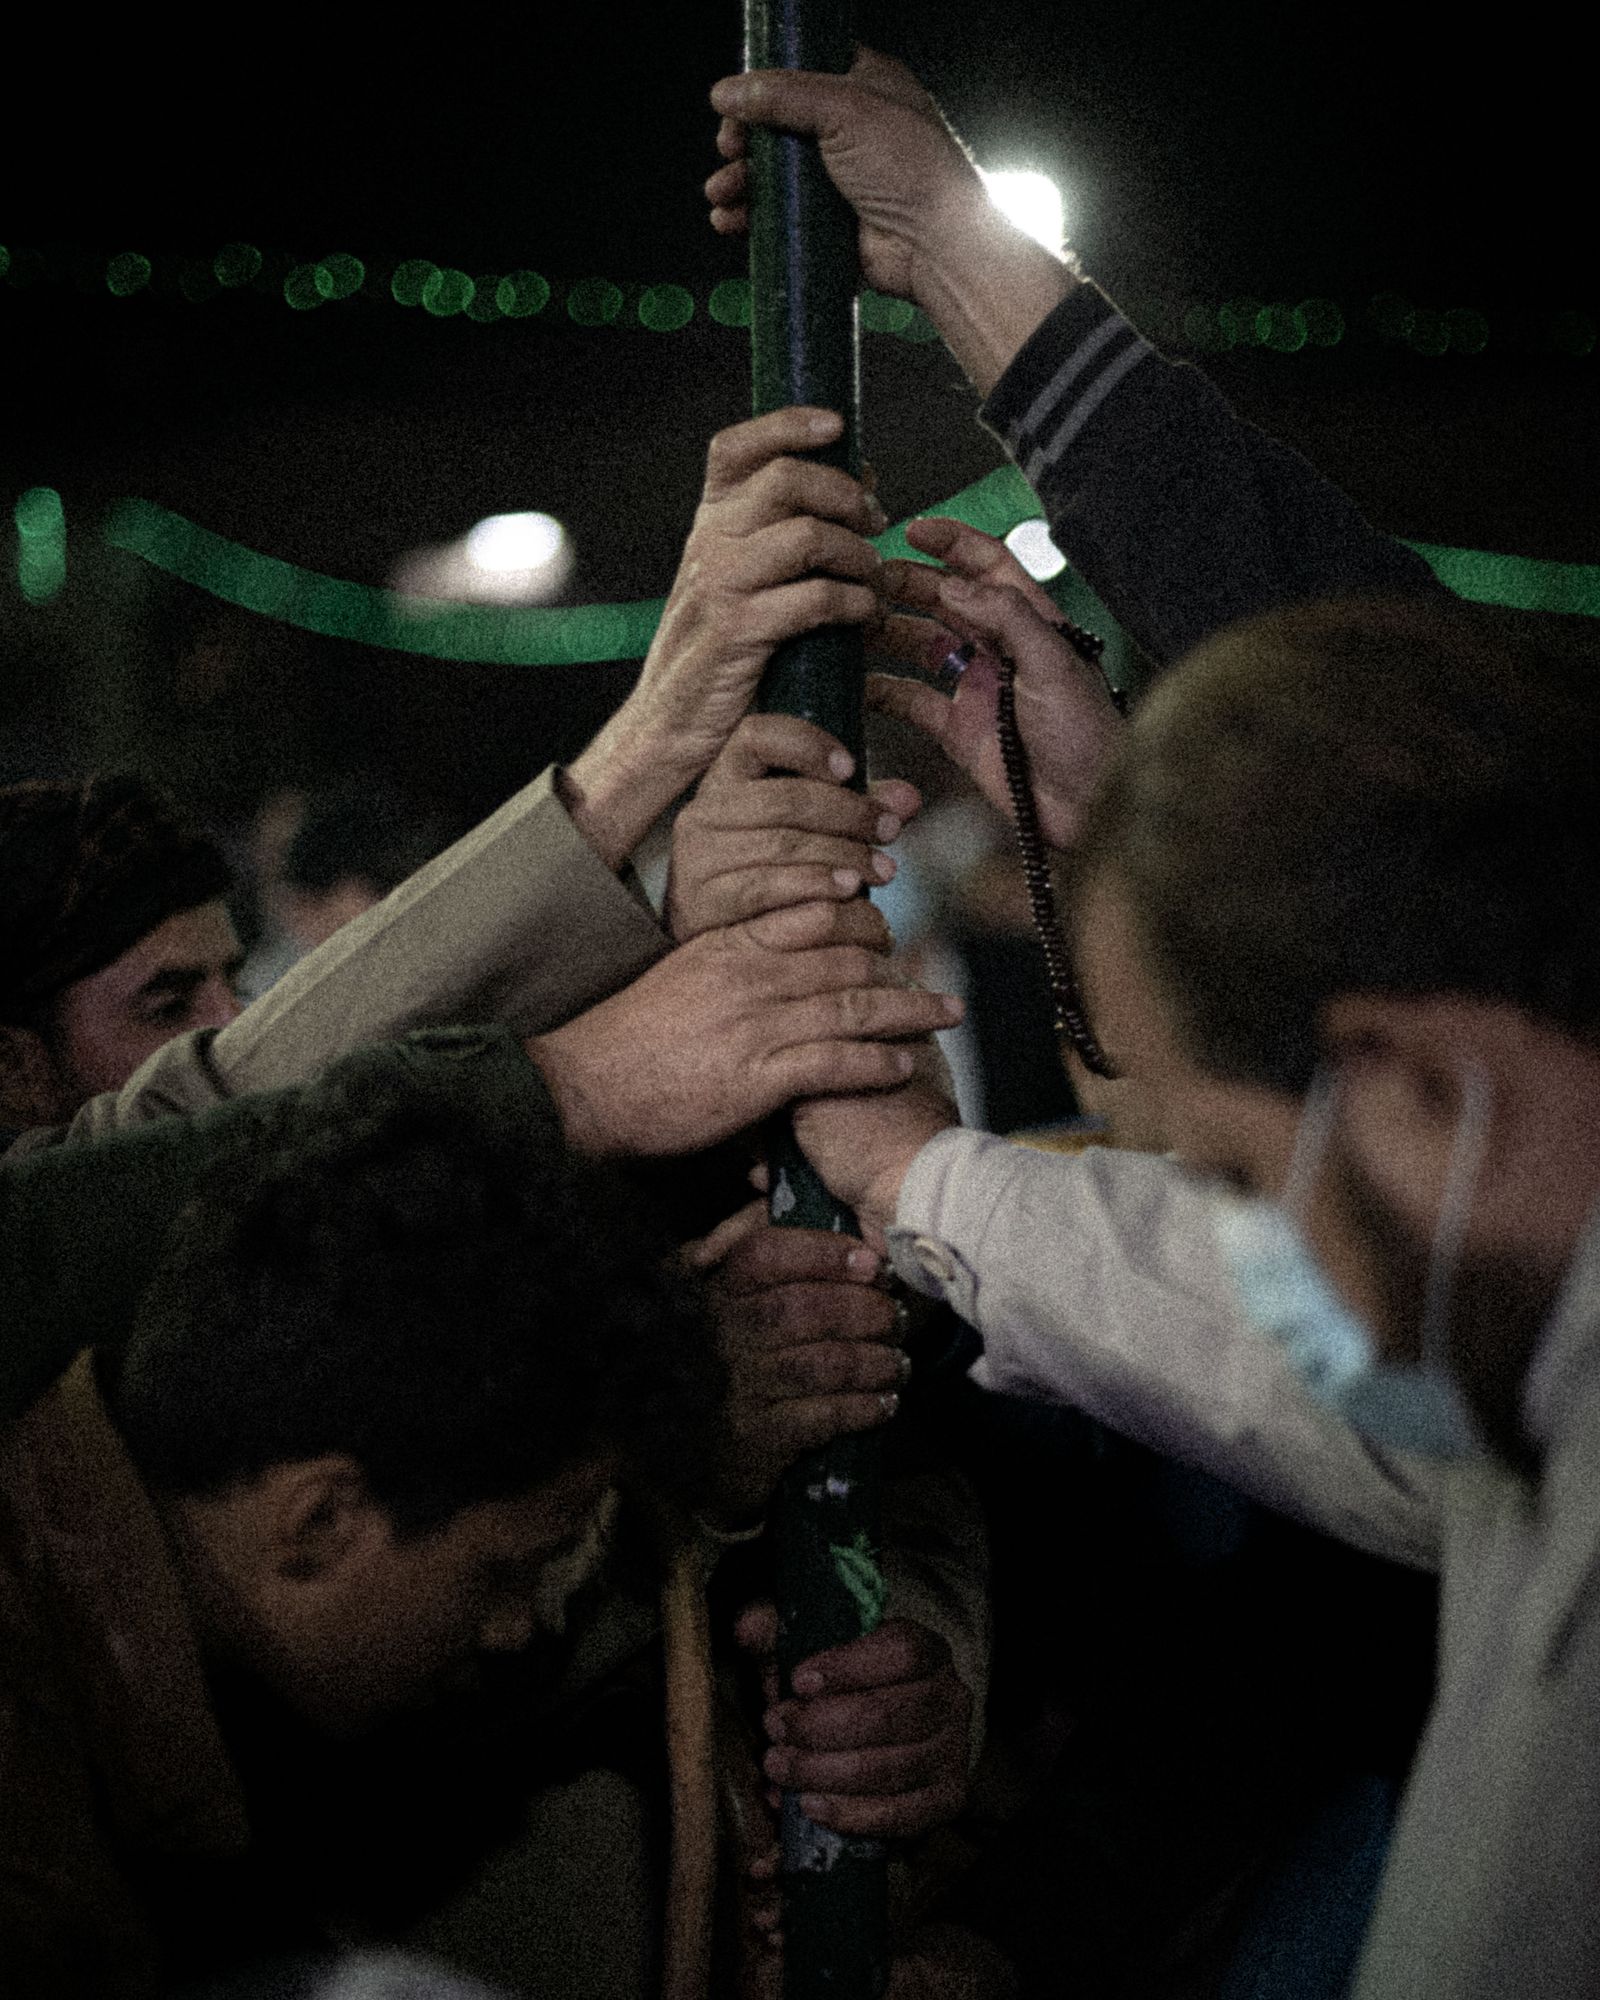 © Chloe Sharrock - Healing through faith. Sufi Shrine of Alexanzanah, Baghdad, Iraq.